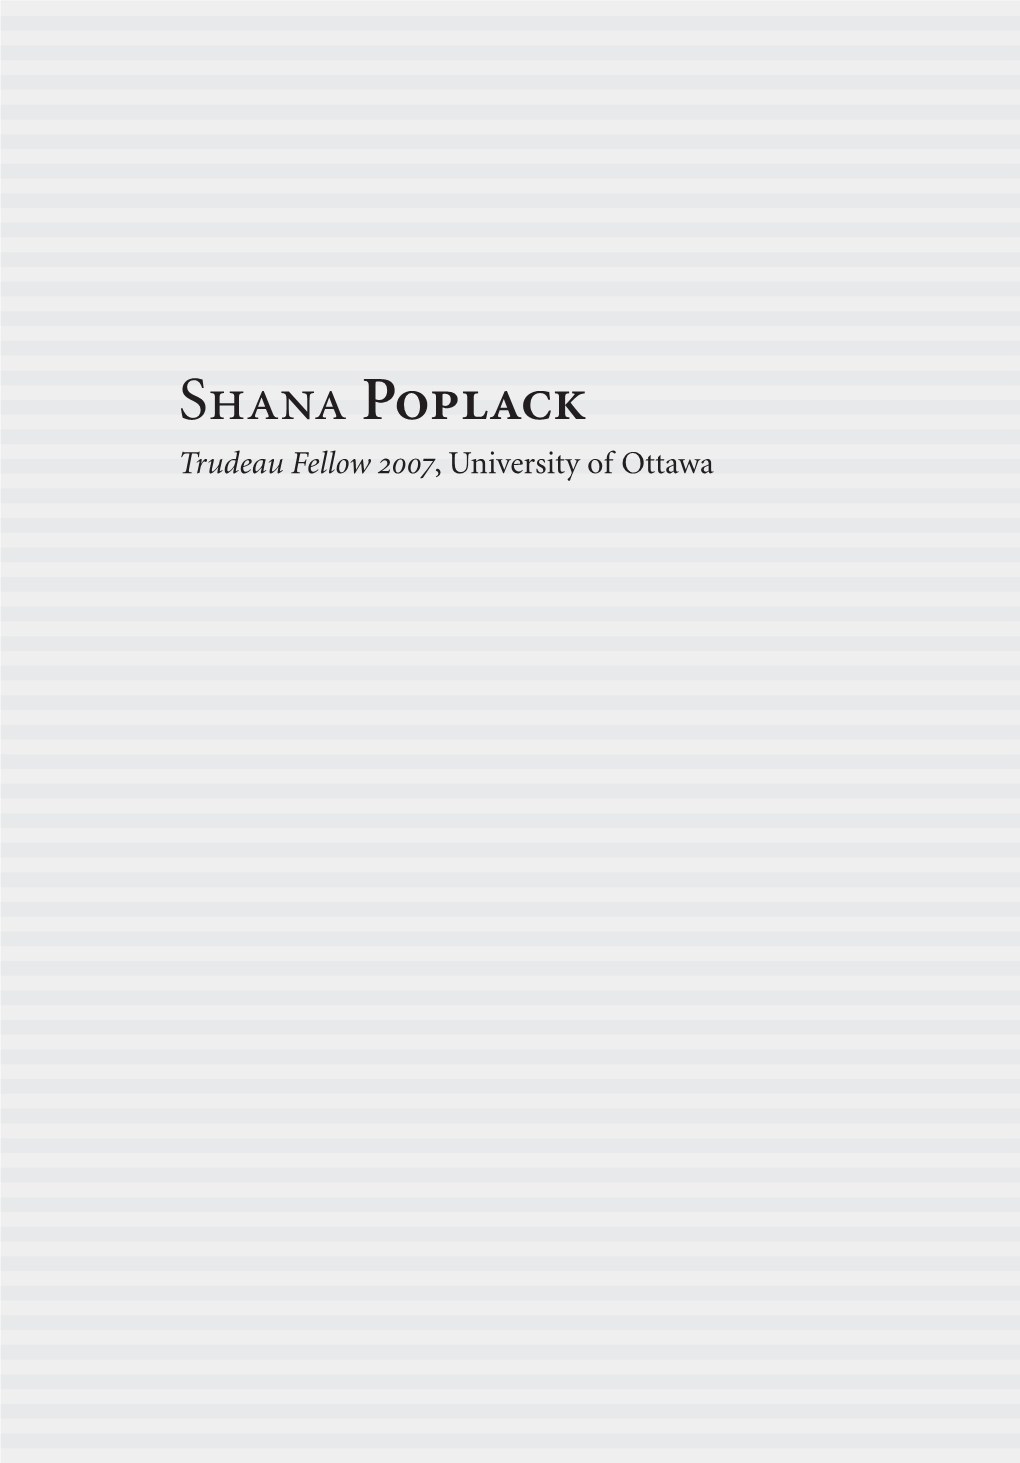 Shana Poplack